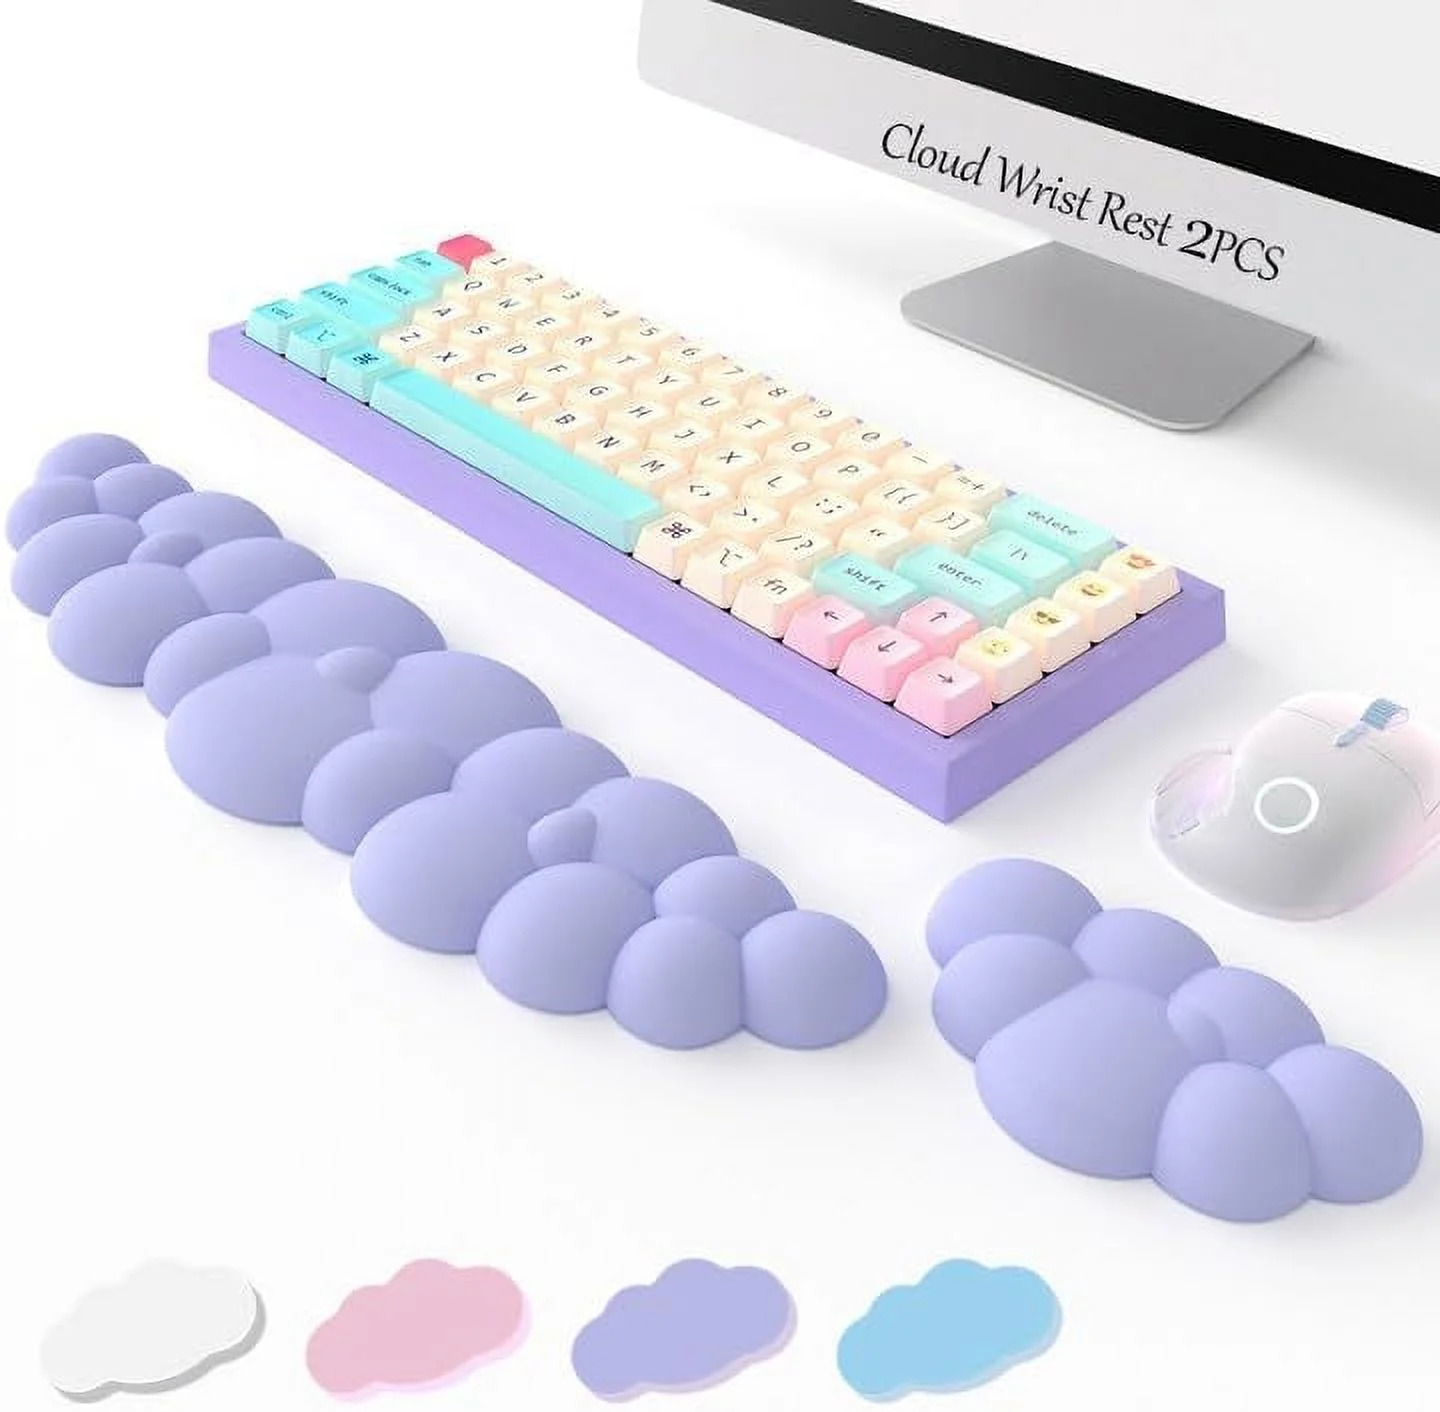 Keyboard Cloud Wrist Rest 2PCS, High Density Memory Foam Keyboard Palm Rest, Erg